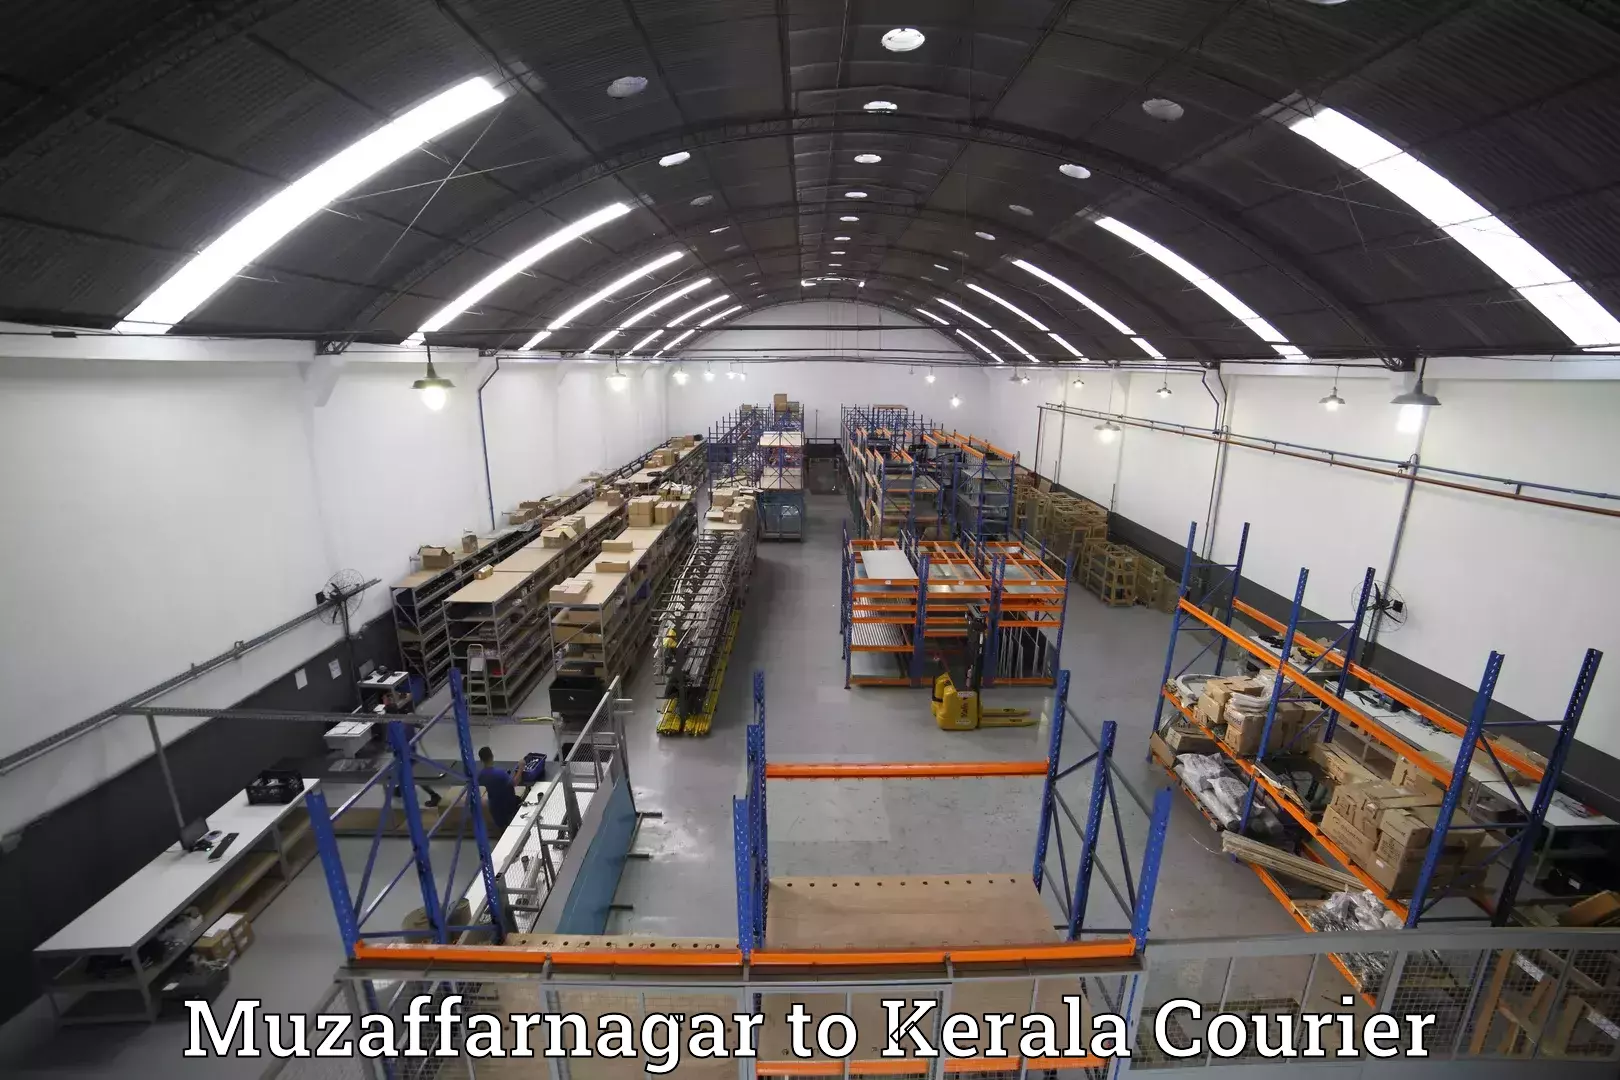 Baggage relocation service Muzaffarnagar to Kerala